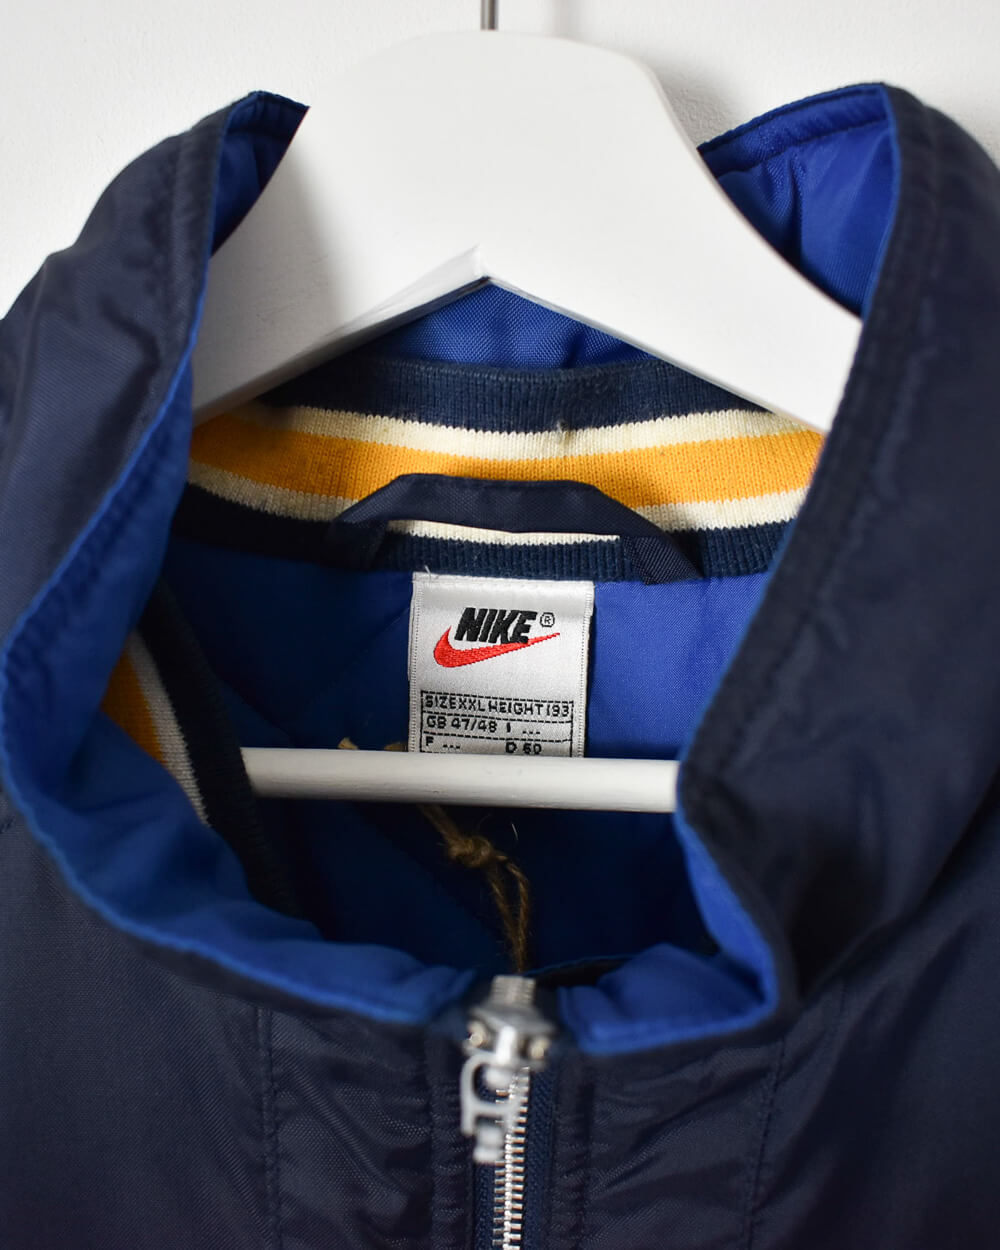 Navy Nike Winter Coat - XX-Large